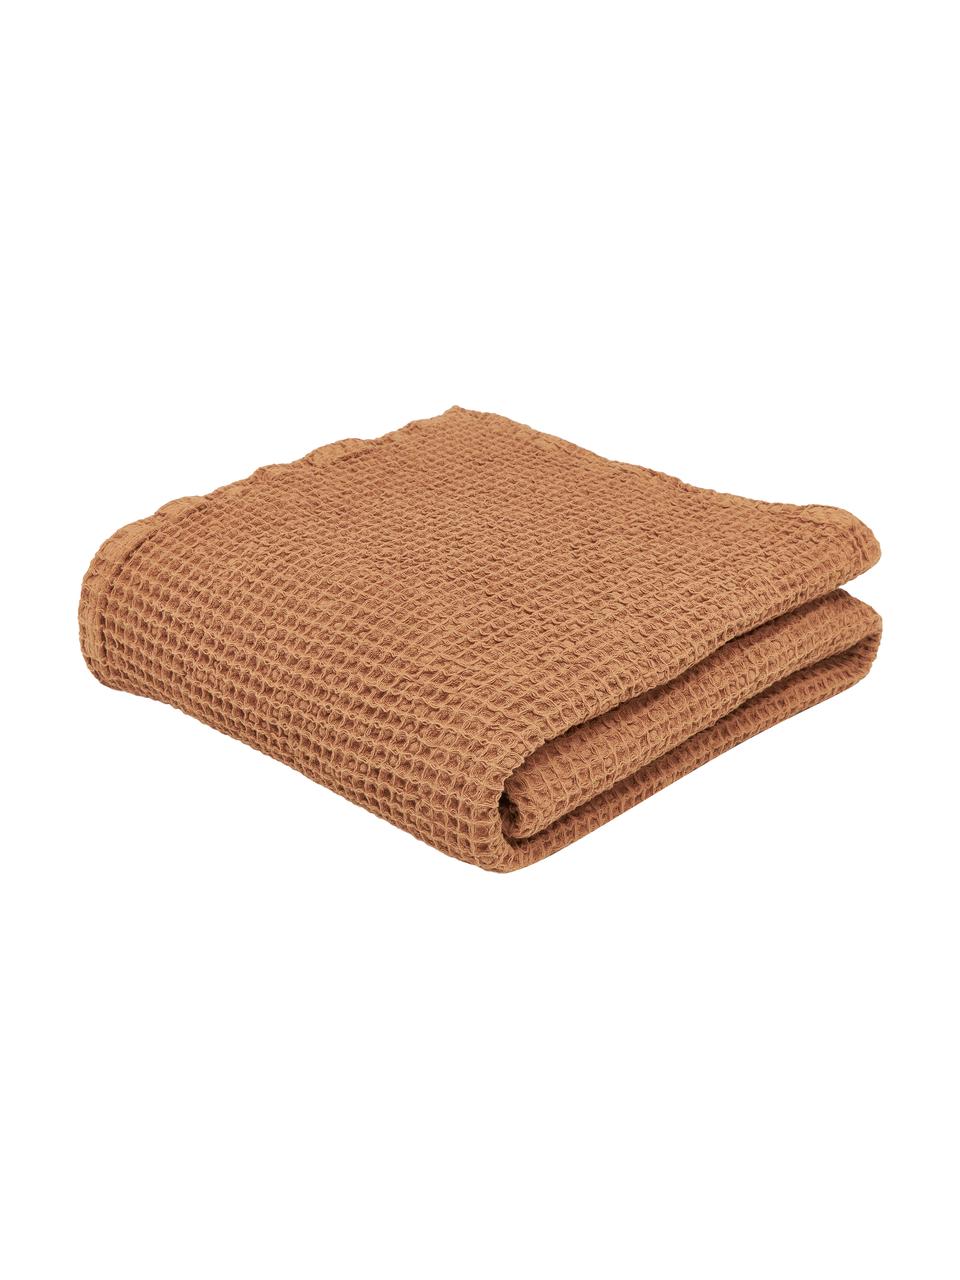 Couvre-lit gaufré coton brun Lois, 100 % coton, Brun, larg. 260 x long. 260 cm (pour lits jusqu'à 200 x 200 cm)